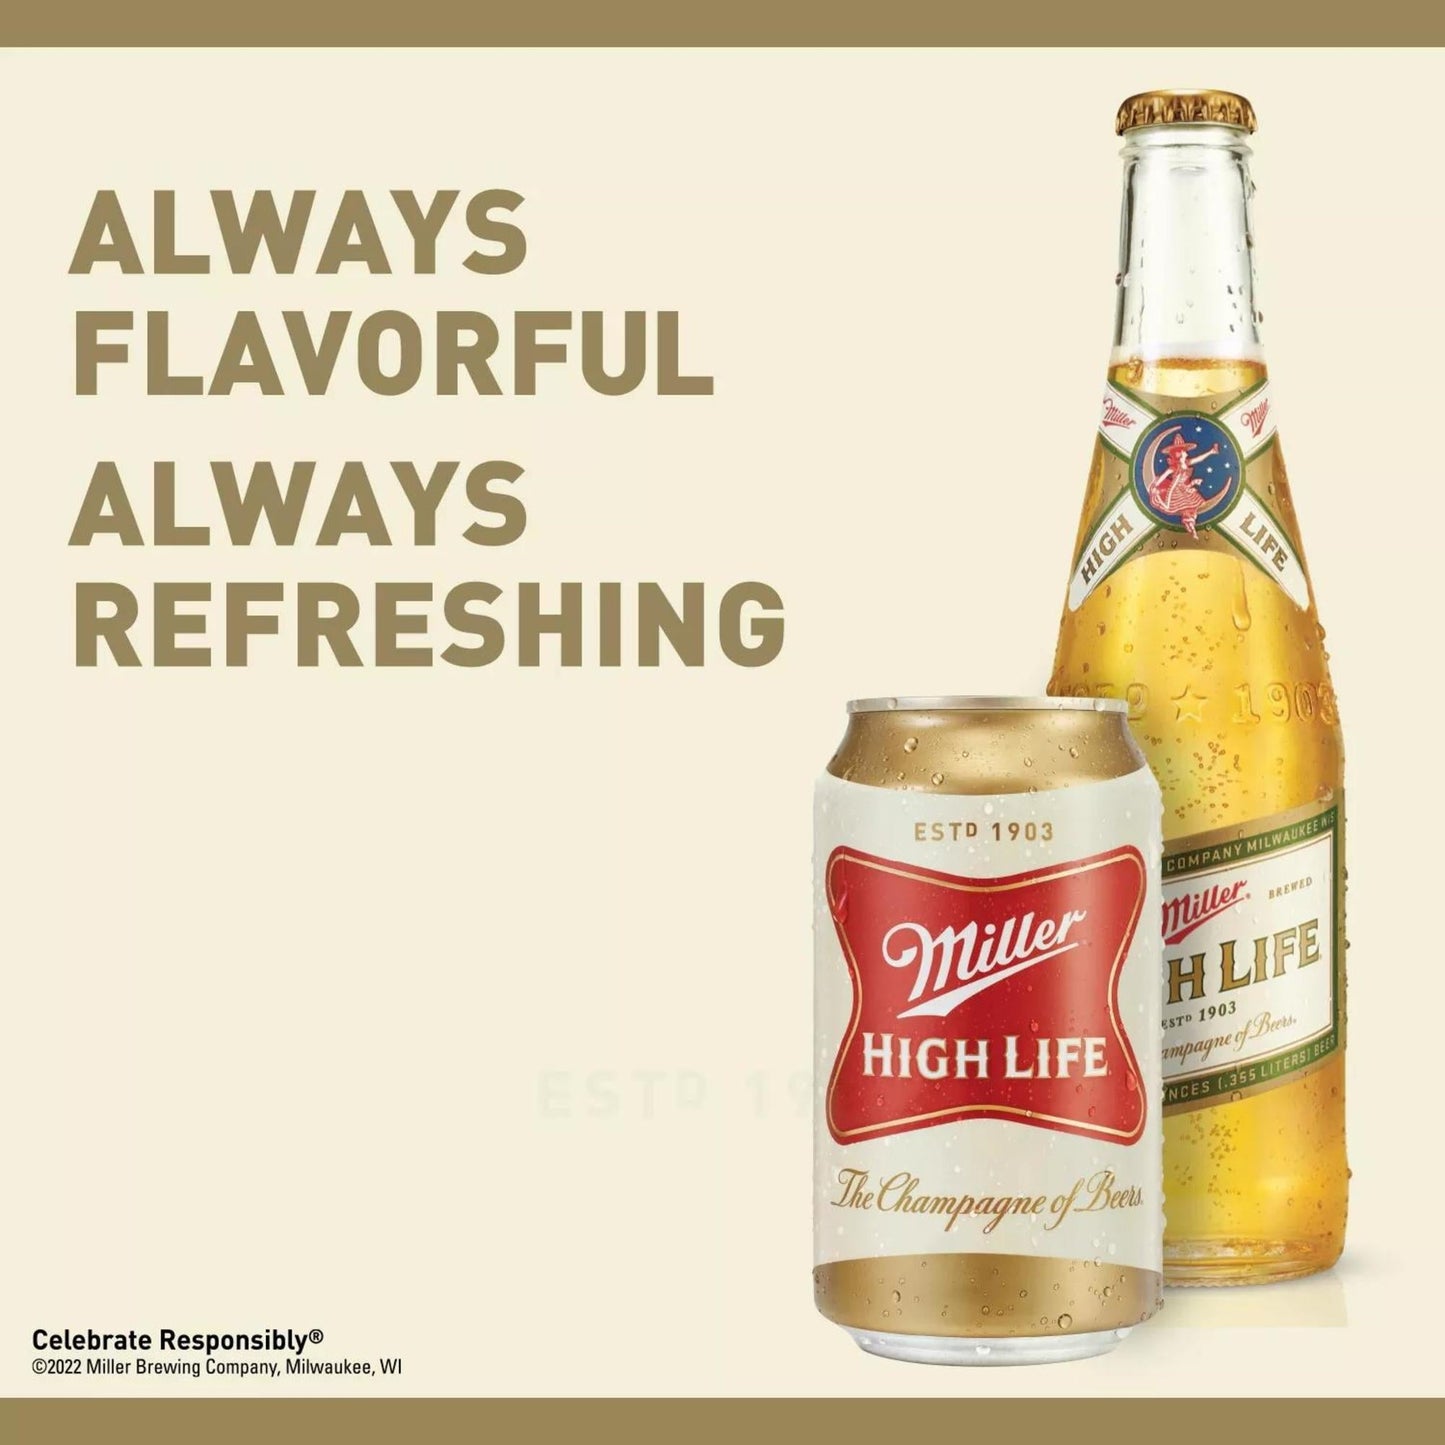 Miller High Life Lager Beer, 6 Pack, 12 fl oz Bottles, 4.6% ABV